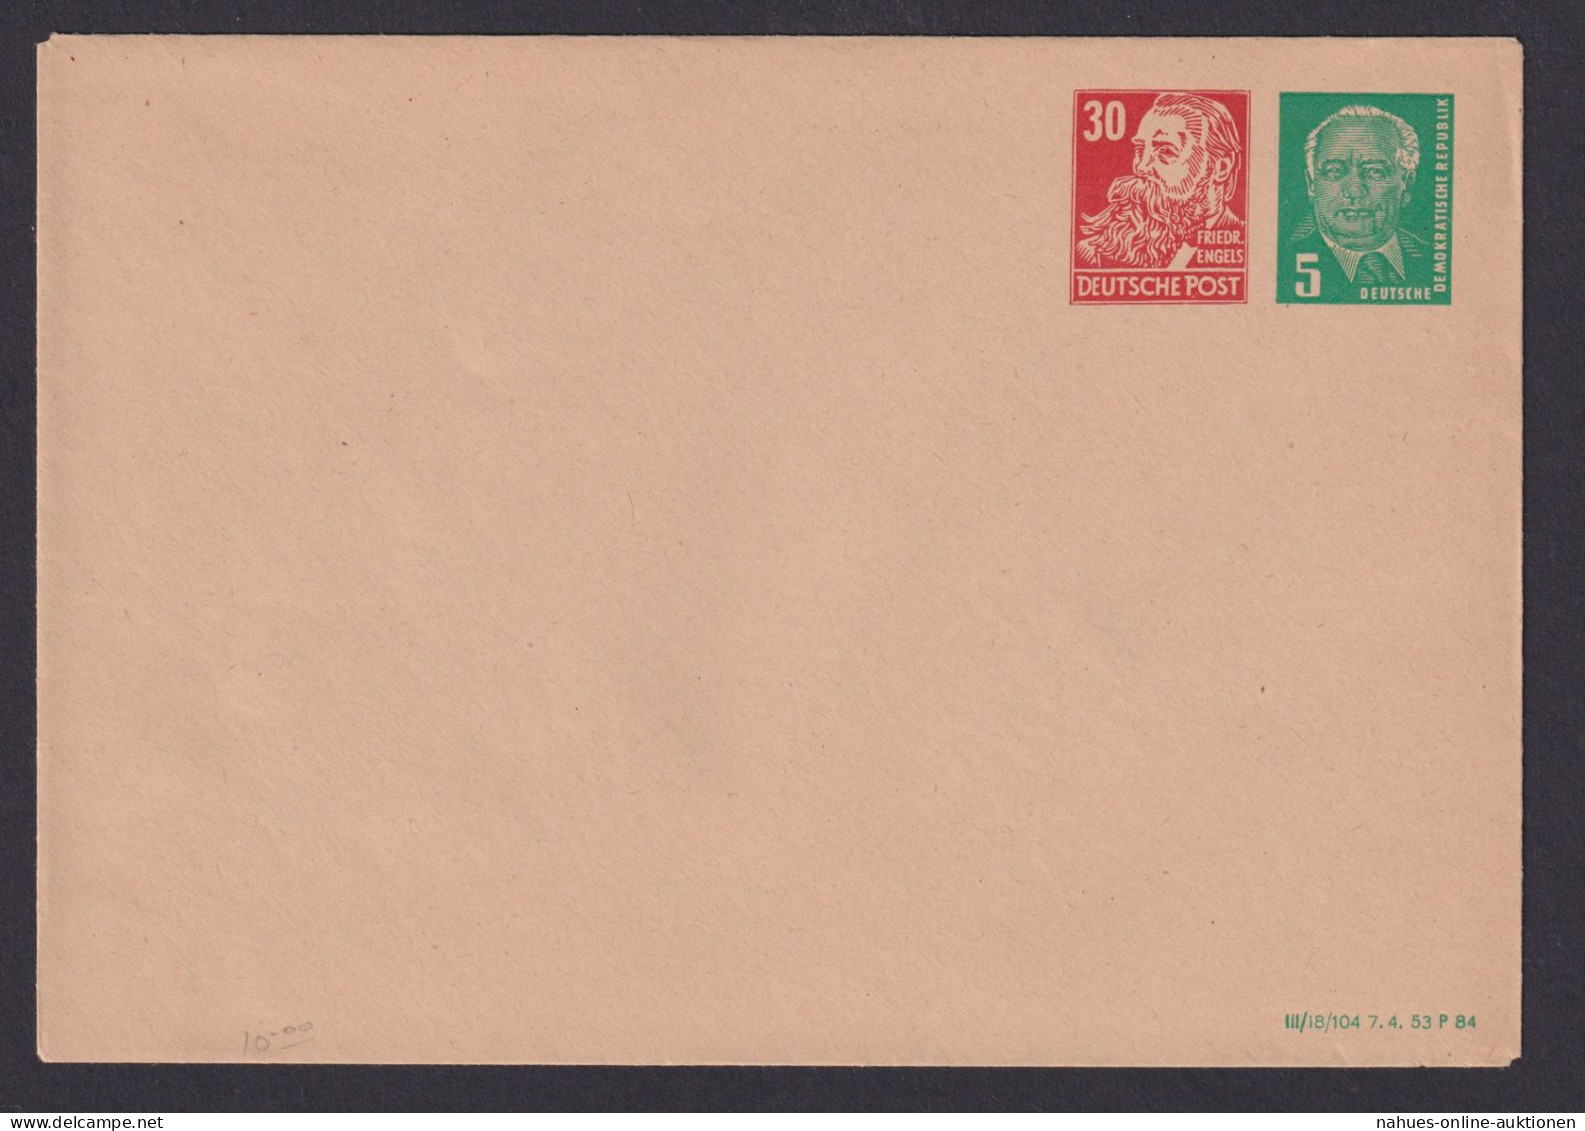 Briefmarken DDR Privatganzsache PU 9 30 Neben 5 Pfg. Mit Druckdatum 1984 Pieck - Postales - Usados